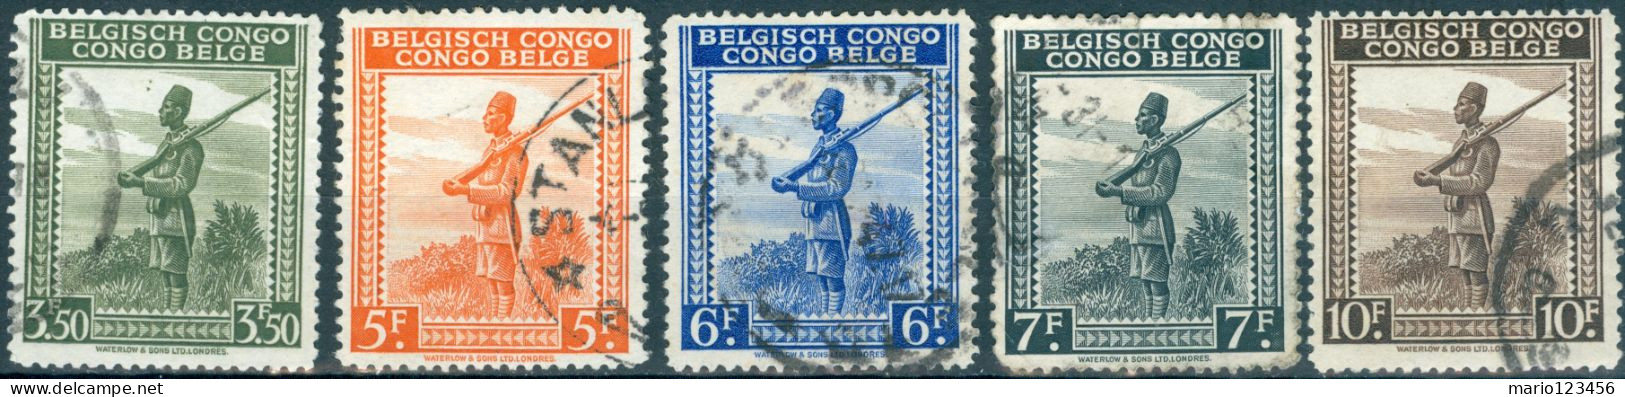 CONGO BELGA, BELGIAN CONGO, SOLDATO CONGOLESE, 1942, FRANCOBOLLI USATI Scott: 220-224 (2,50) - Gebruikt